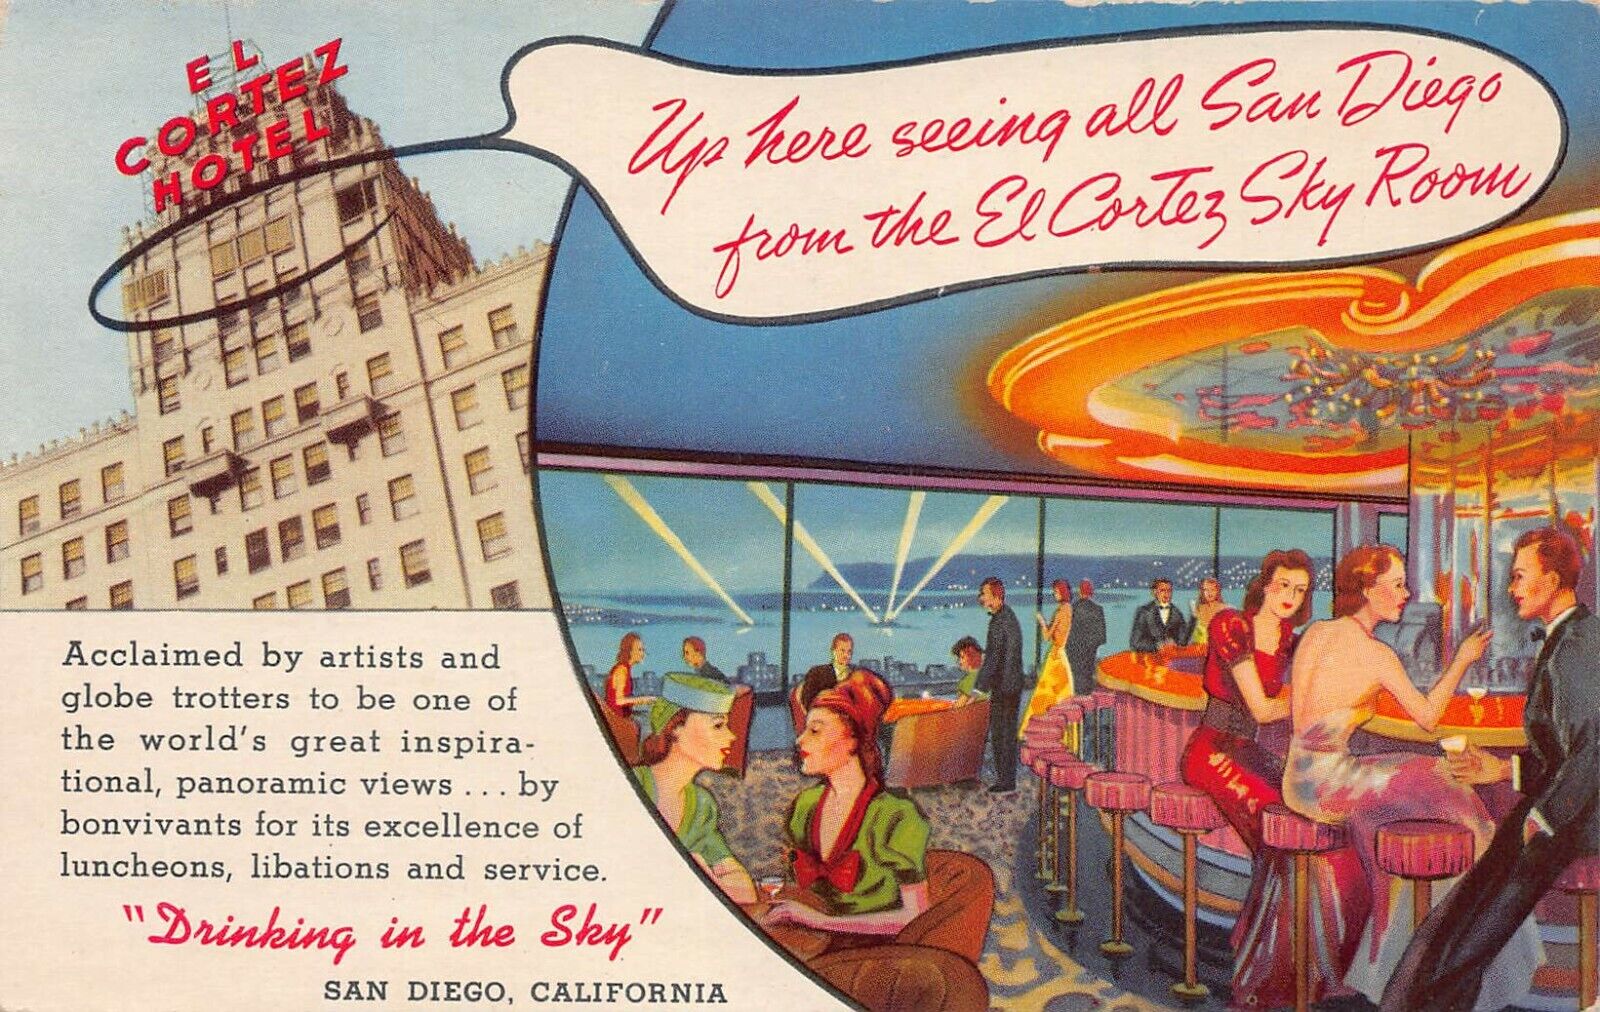 Views of El Cortez Hotel and El Cortez Sky Room, San Diego, CA., Early Postcard